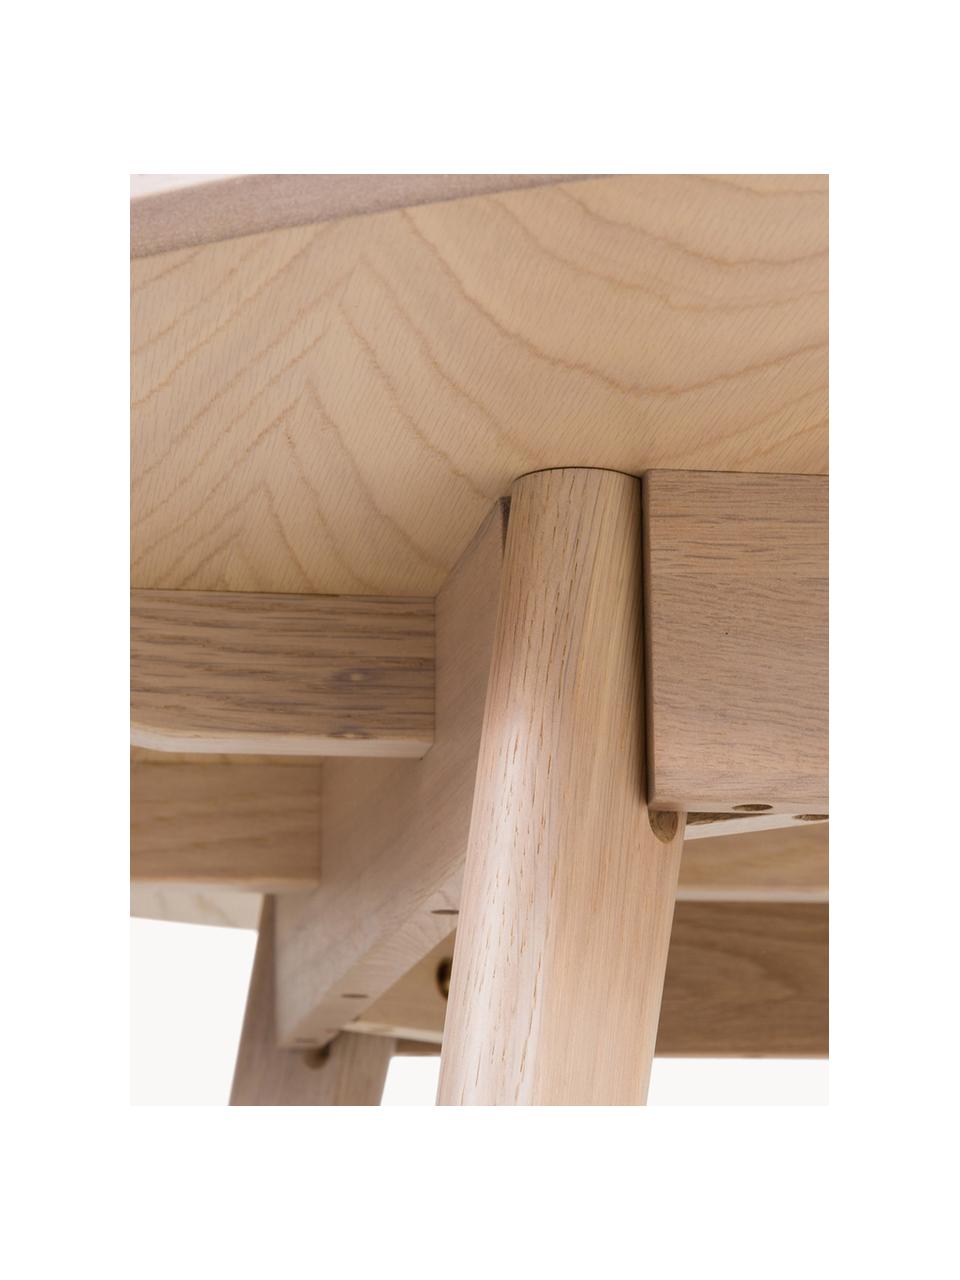 Tavolo rotondo in legno di quercia bianco lavato Yumi Ø 115 cm, Legno di quercia massiccio bianco spazzolato, Legno di quercia, bianco spazzolato, Ø 115 cm